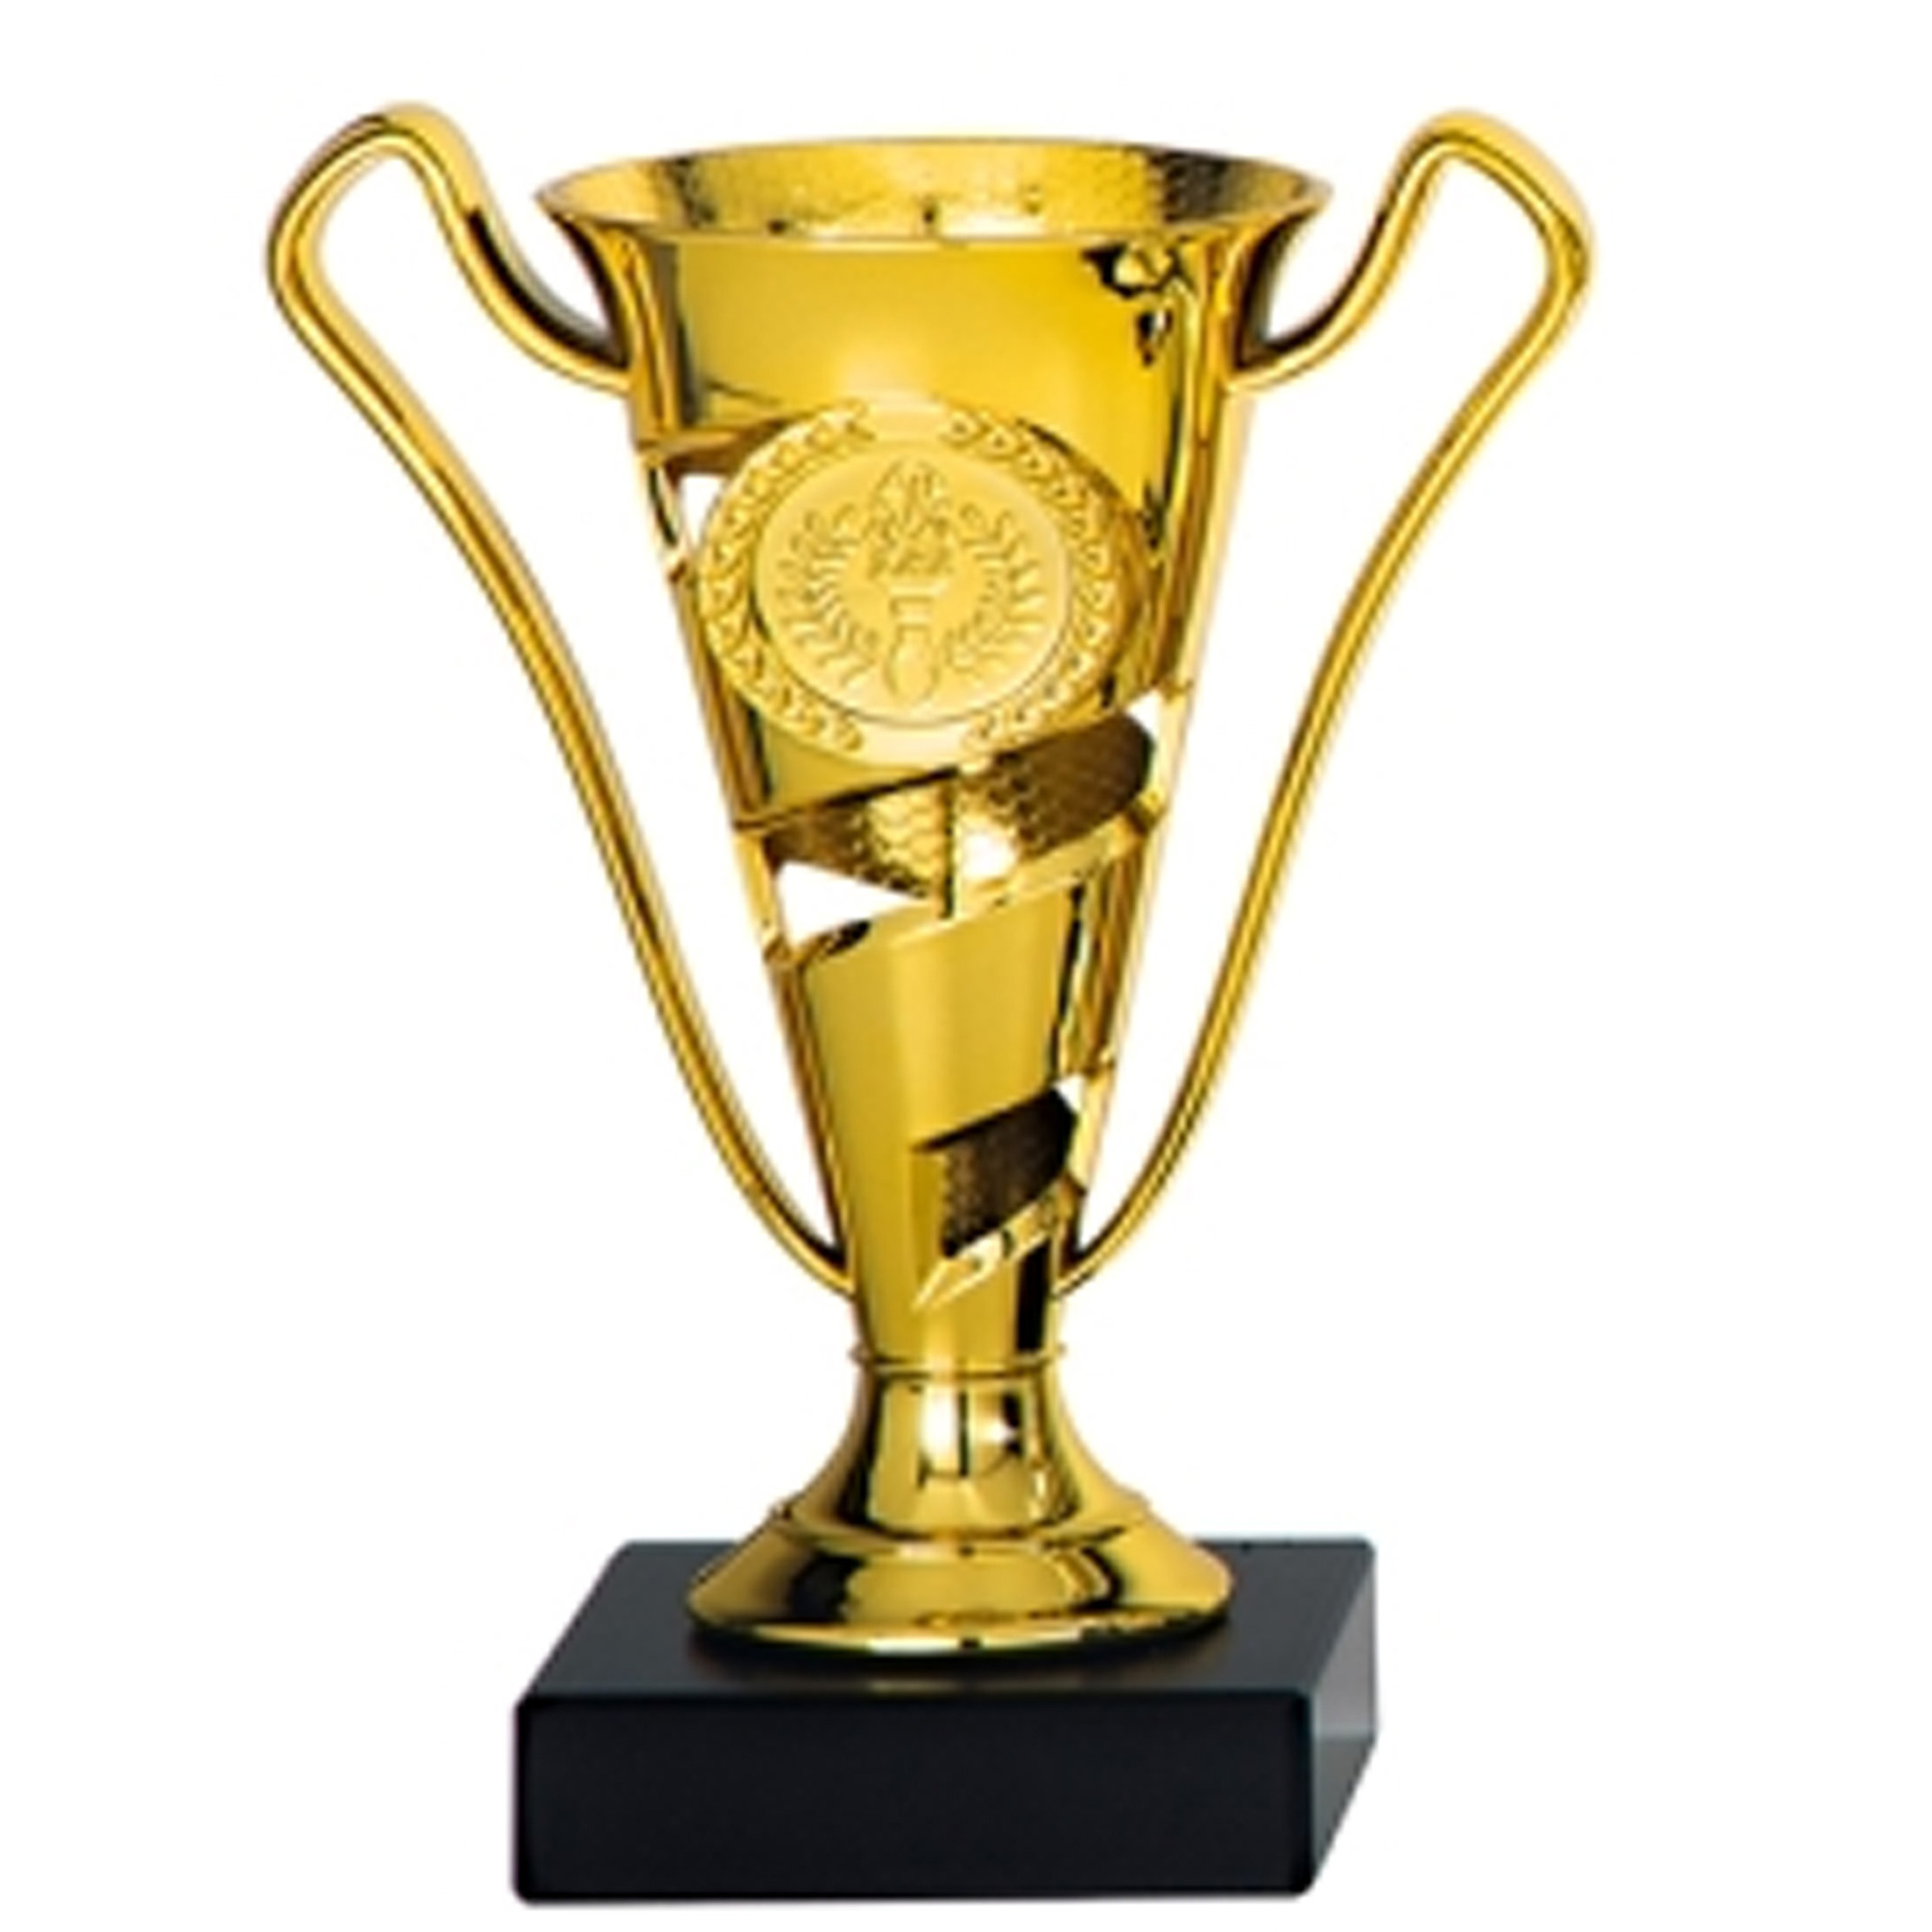 Luxe trofee-prijs beker met oren goud kunststof 17 x 11 cm sportprijs